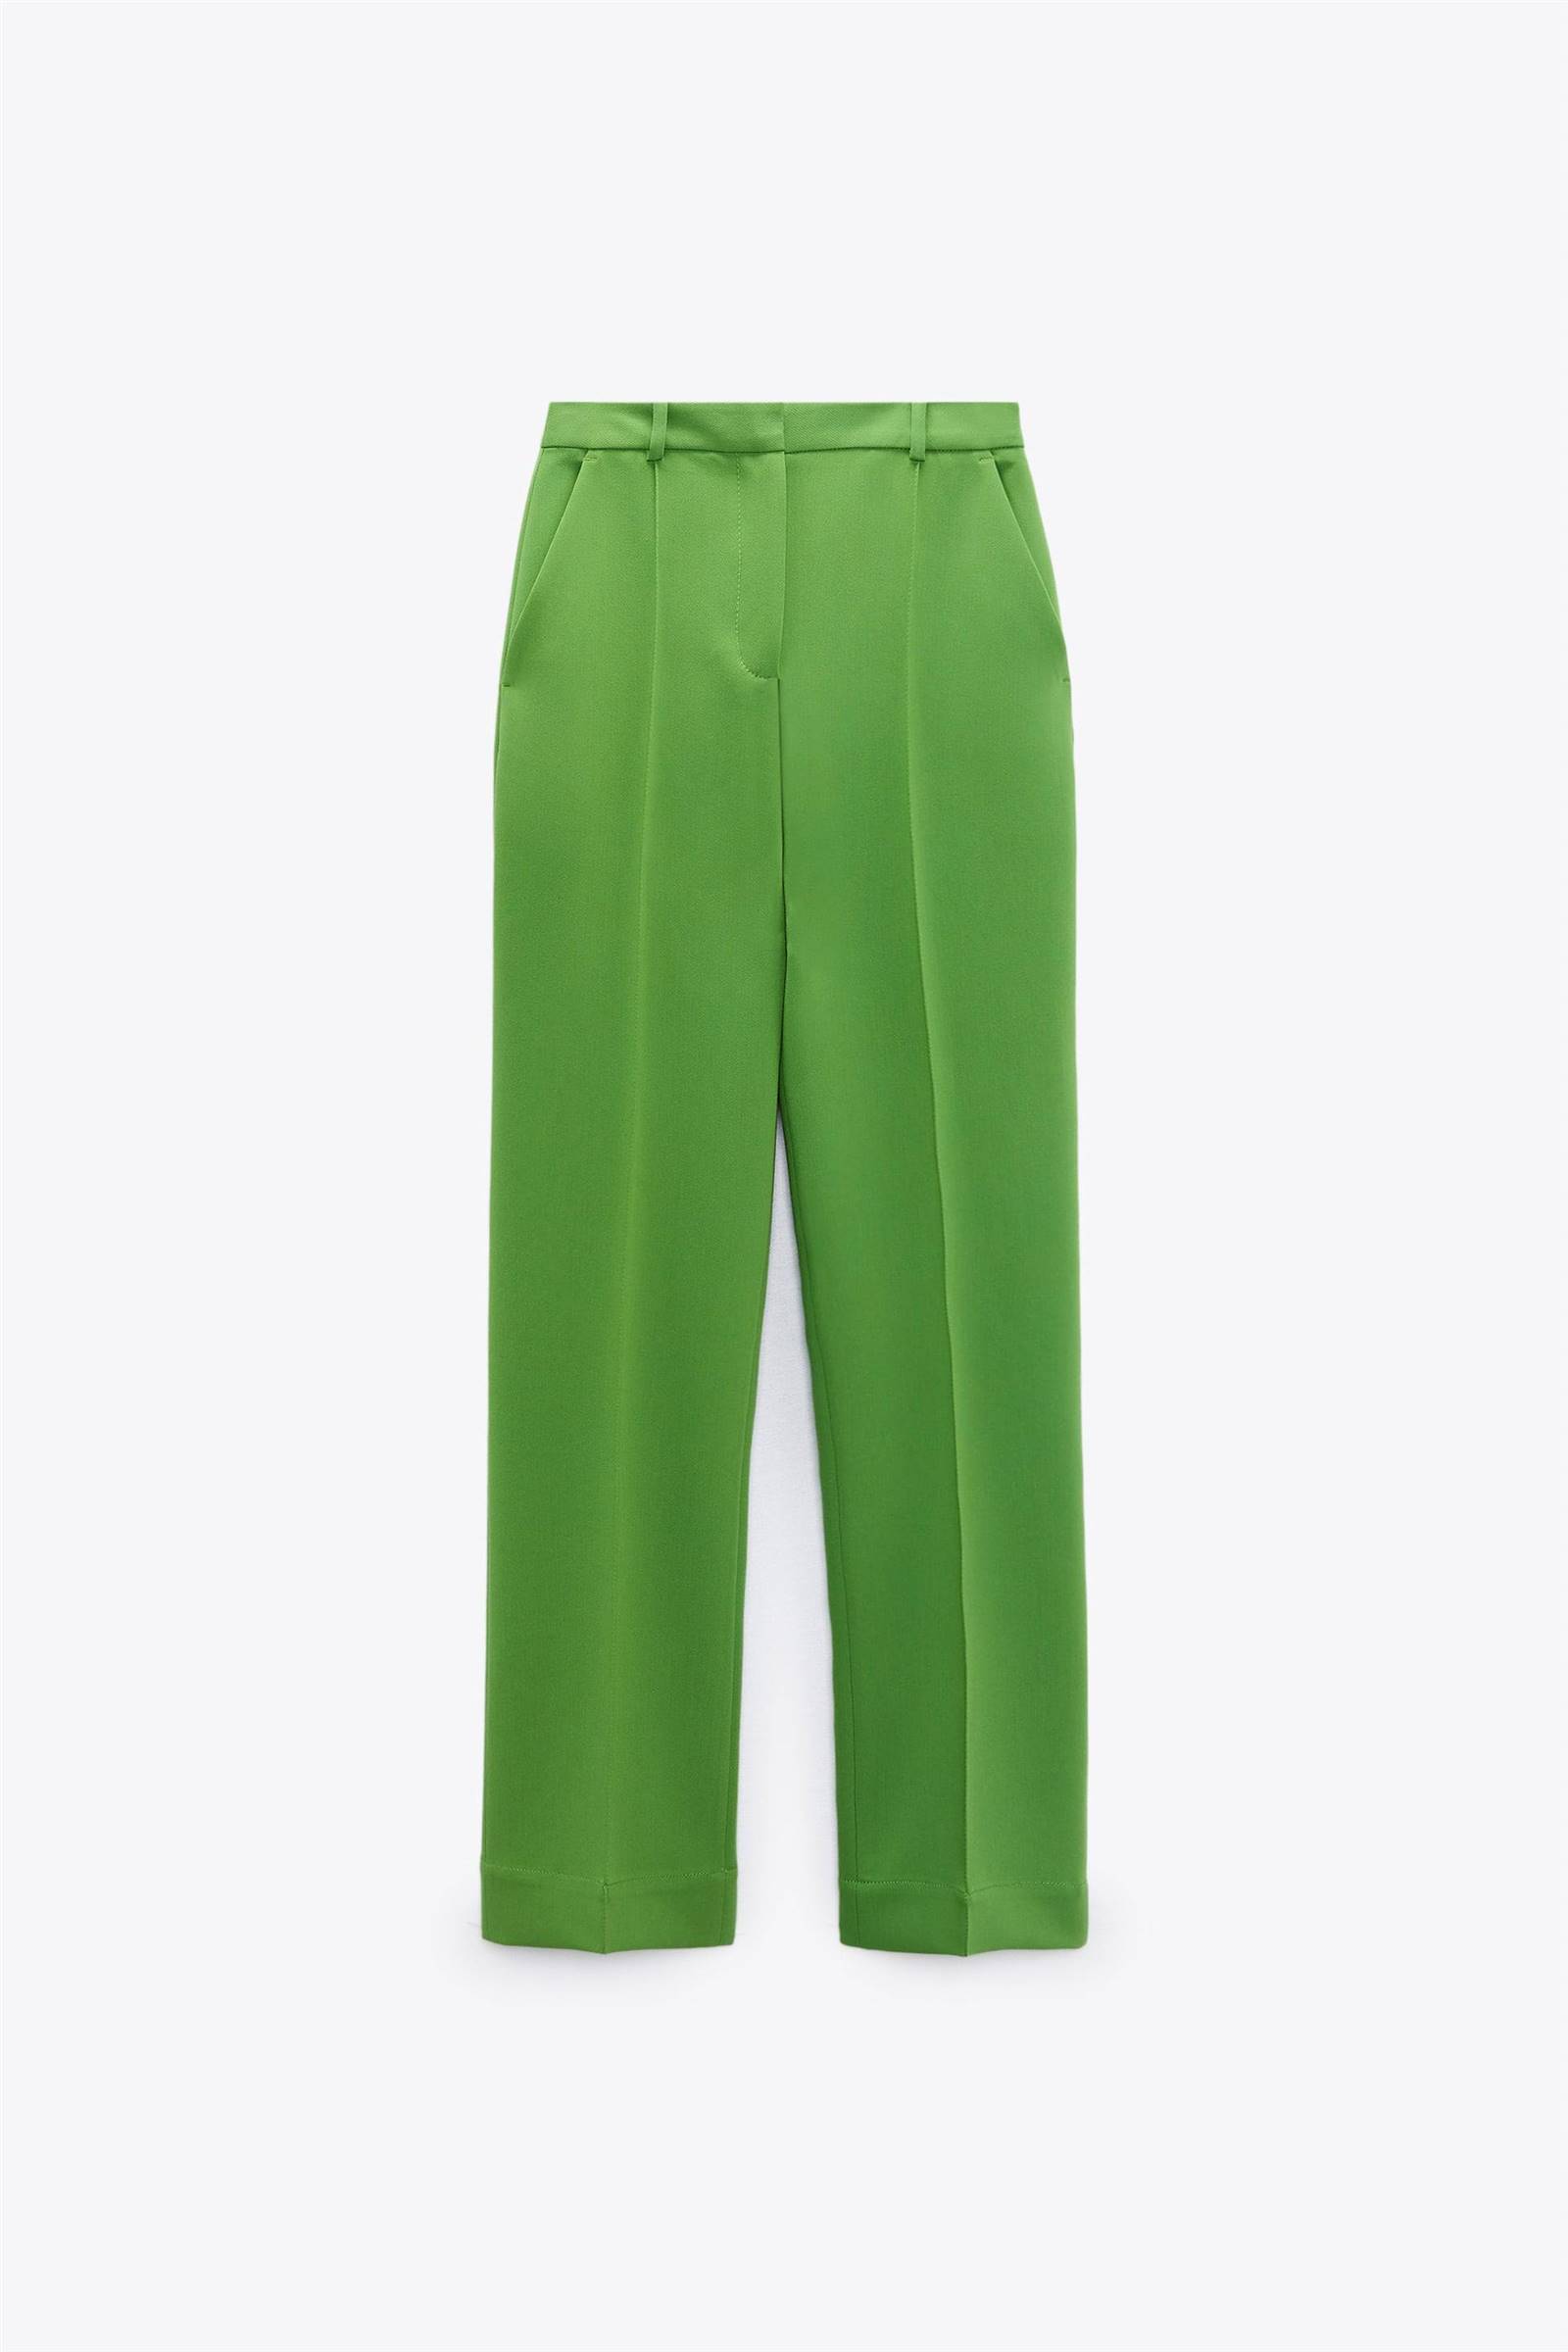 Pantalón verde de corte recto de Zara